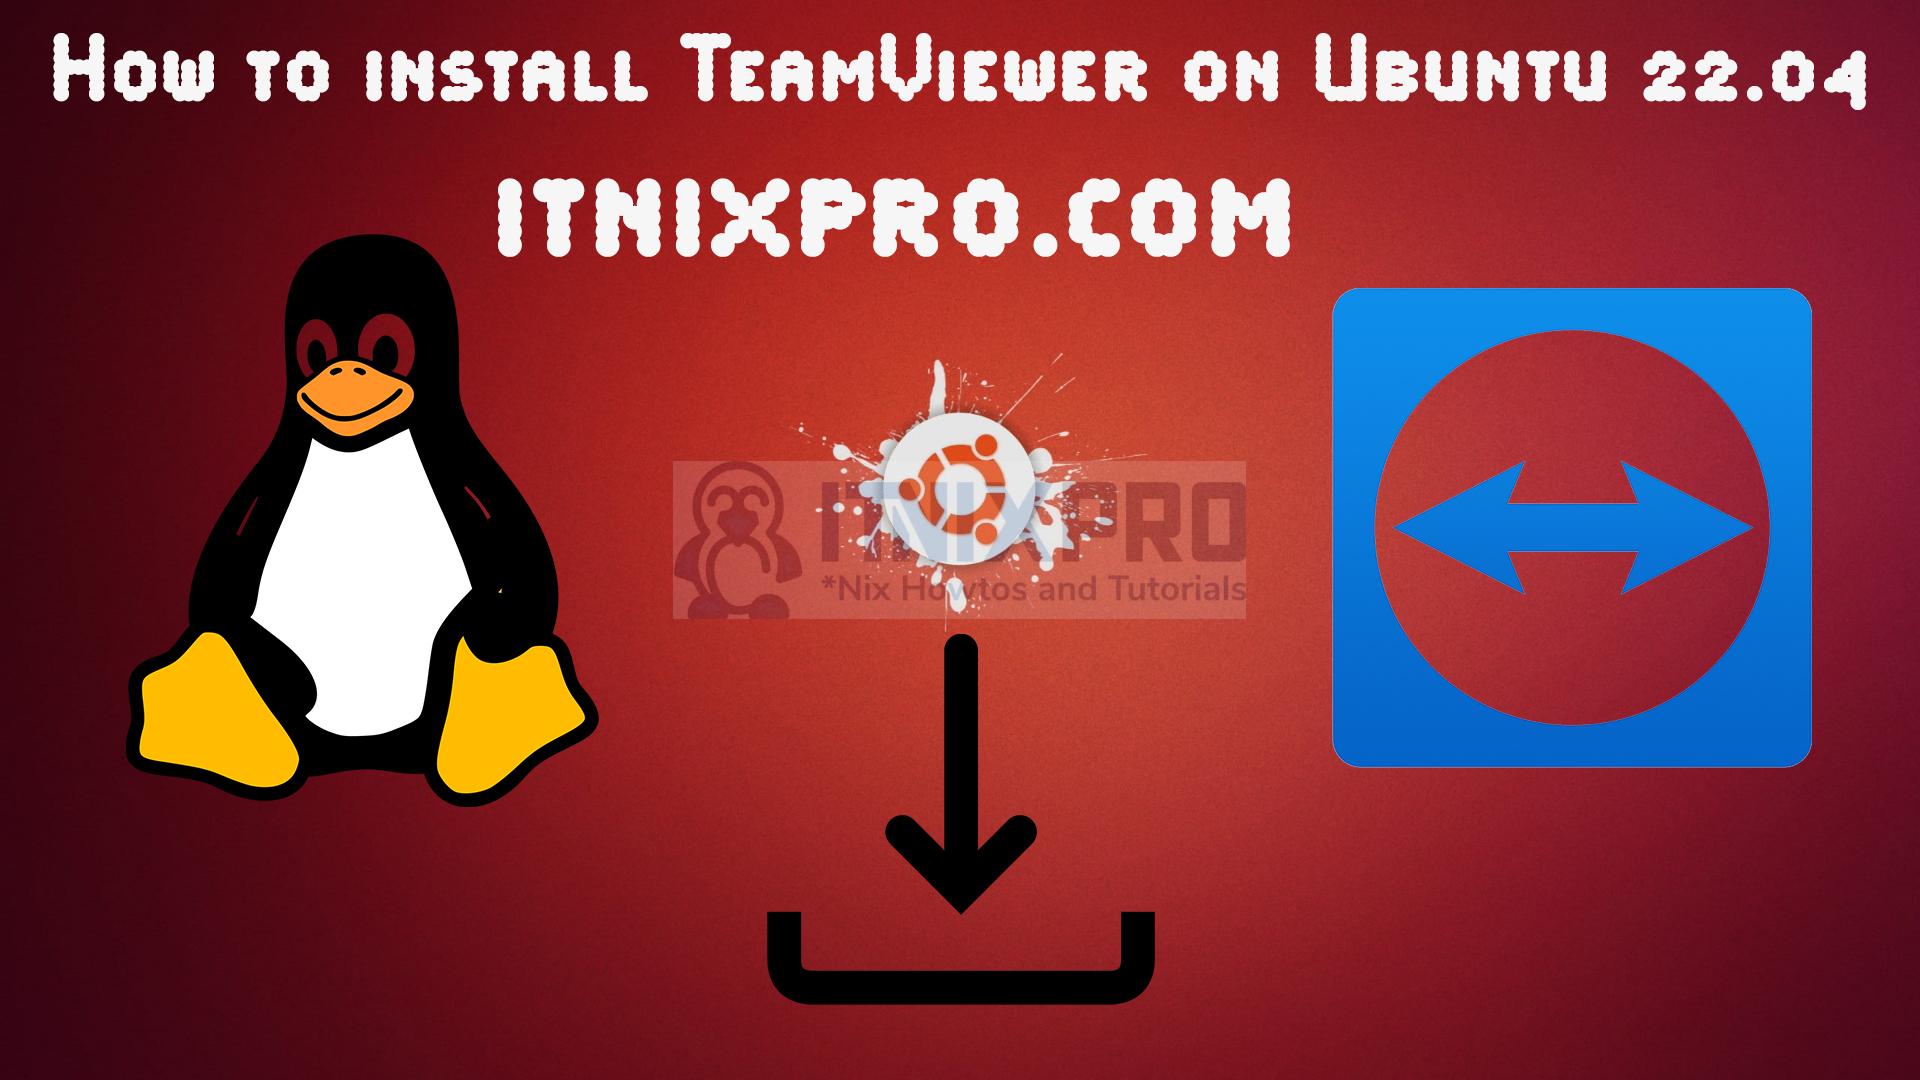 teamviewer download for ubuntu 22.04